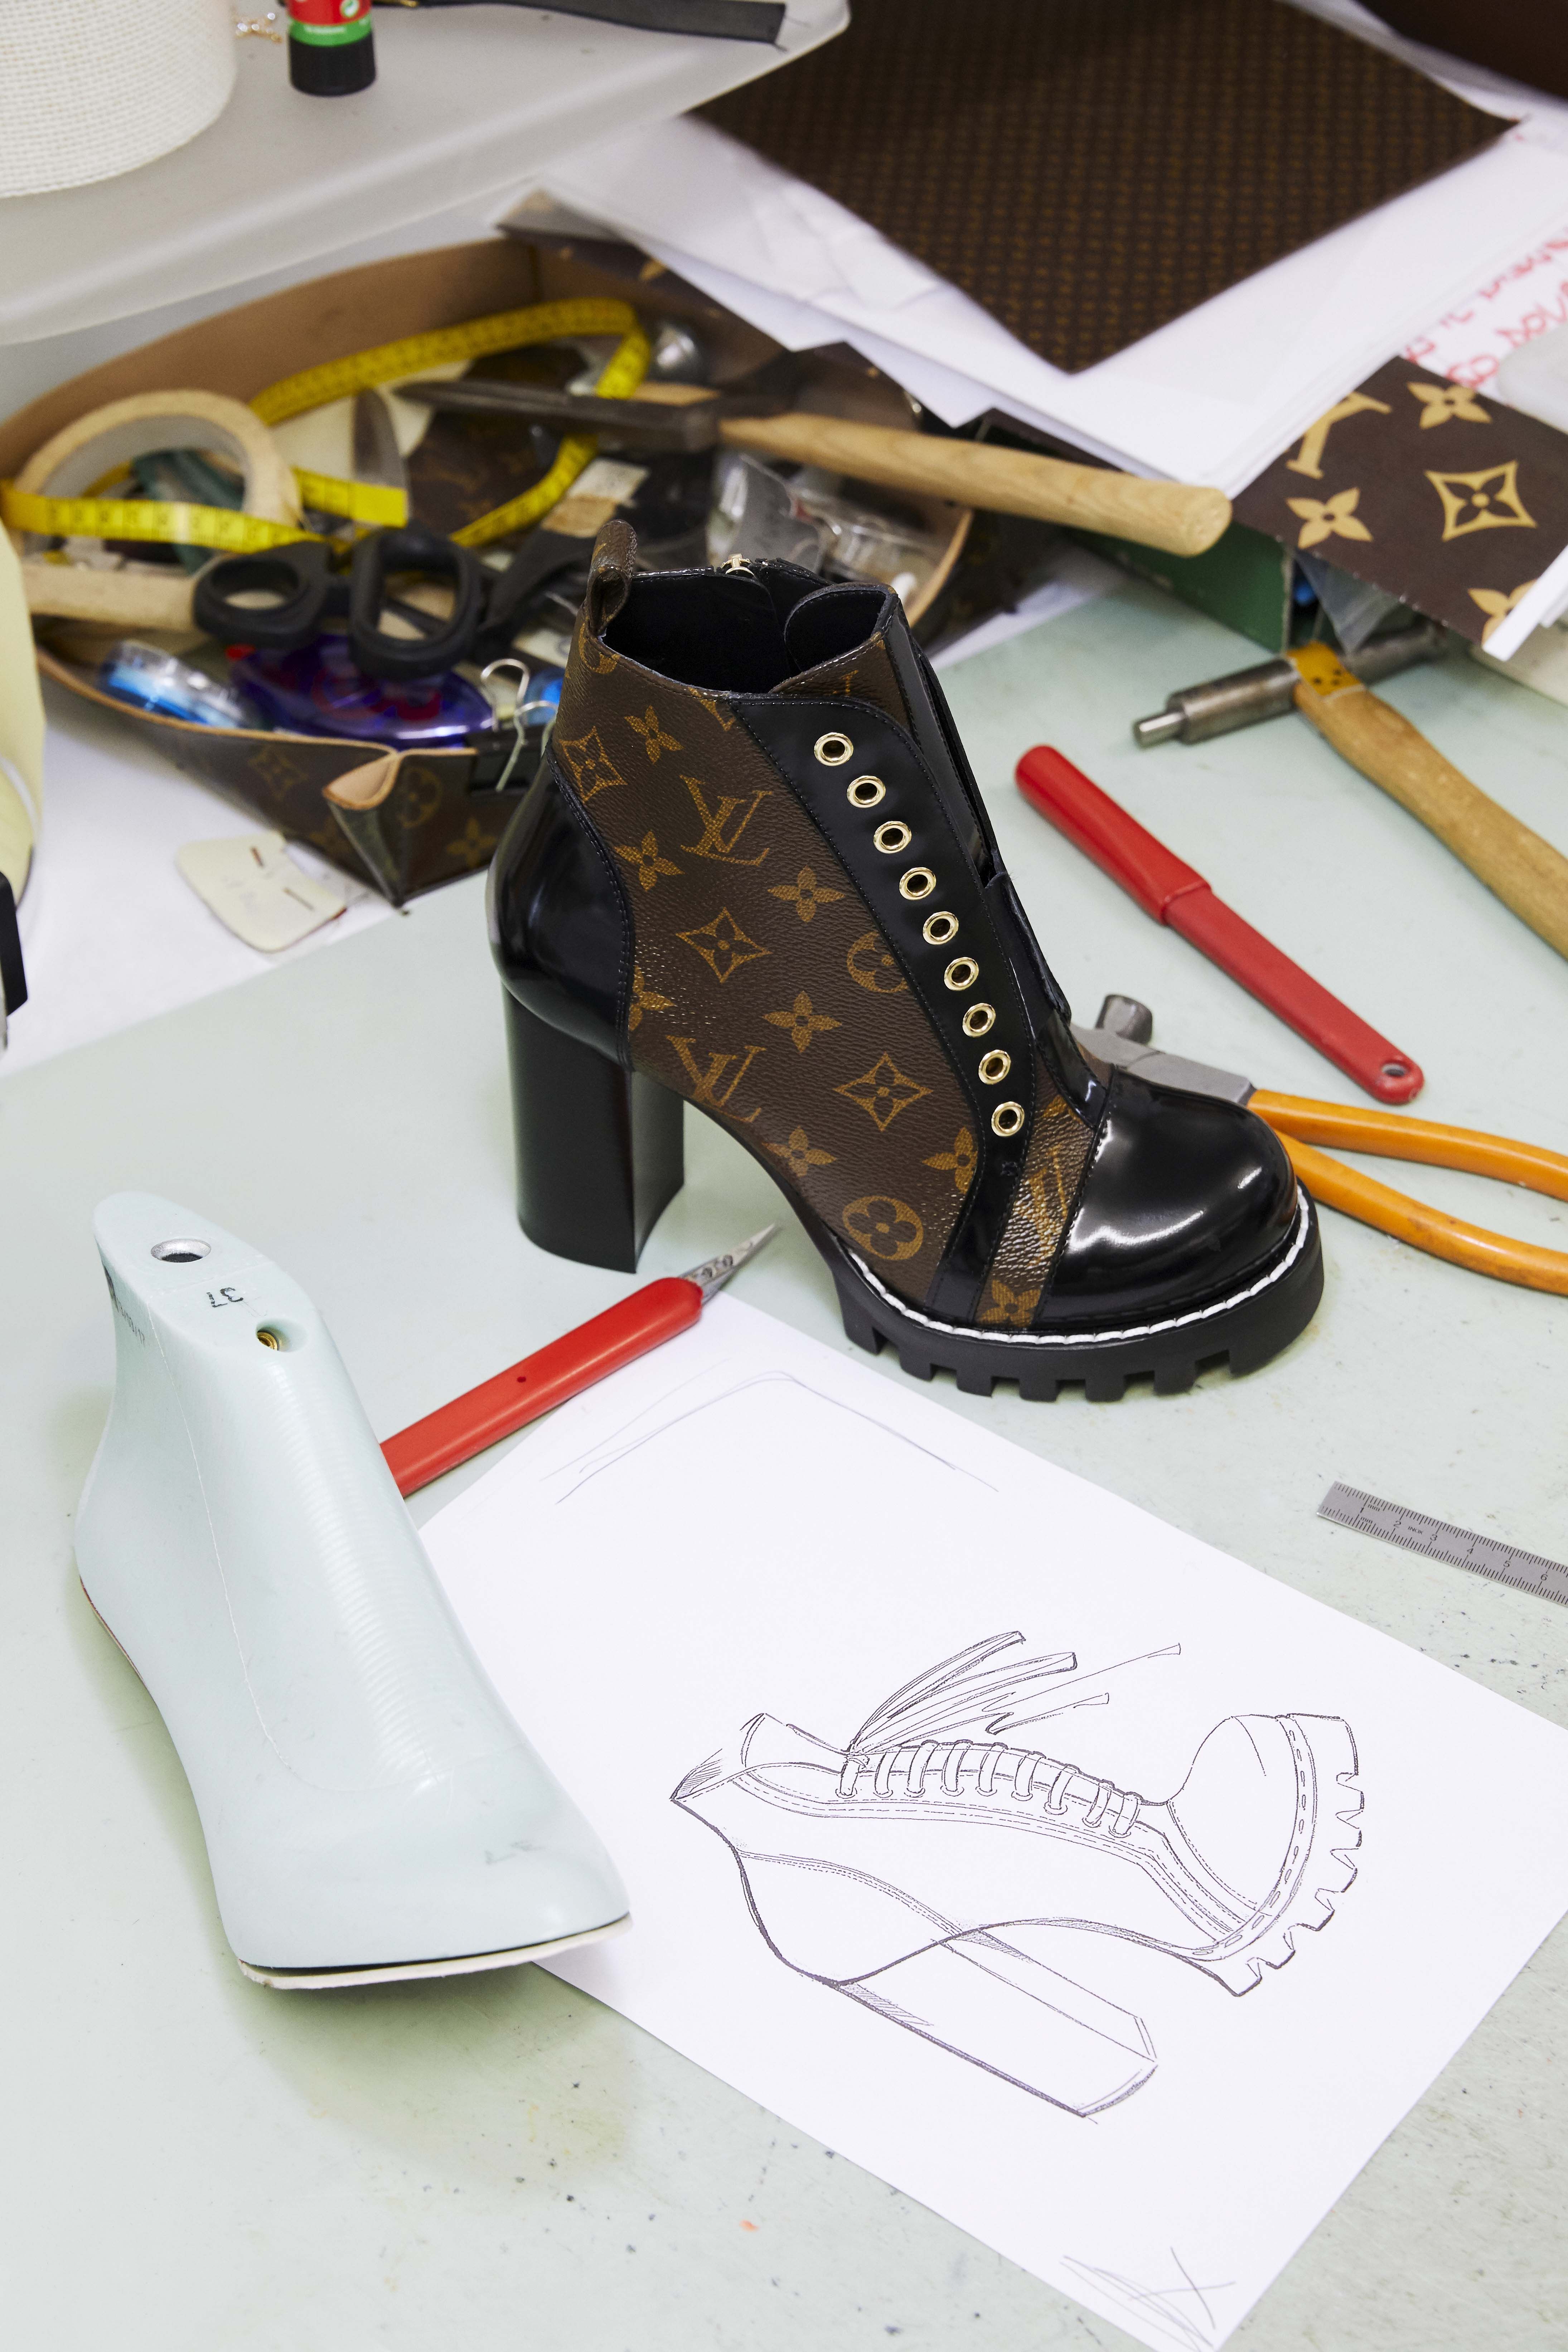 Reportaje desde el feudo del calzado de Louis Vuitton en Venecia